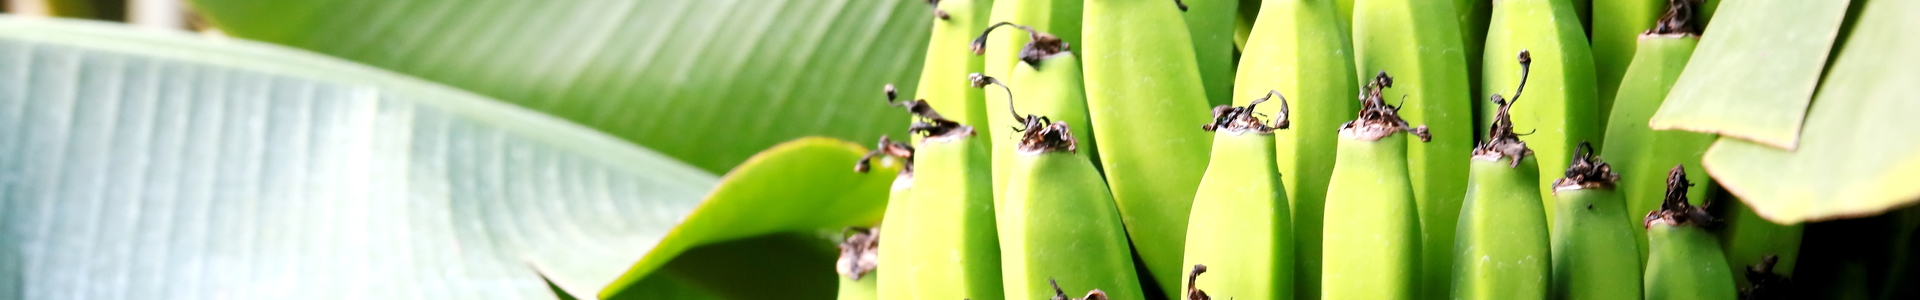 Equacacao - cacao d'Équateur - Fruits déshydratés - Banane